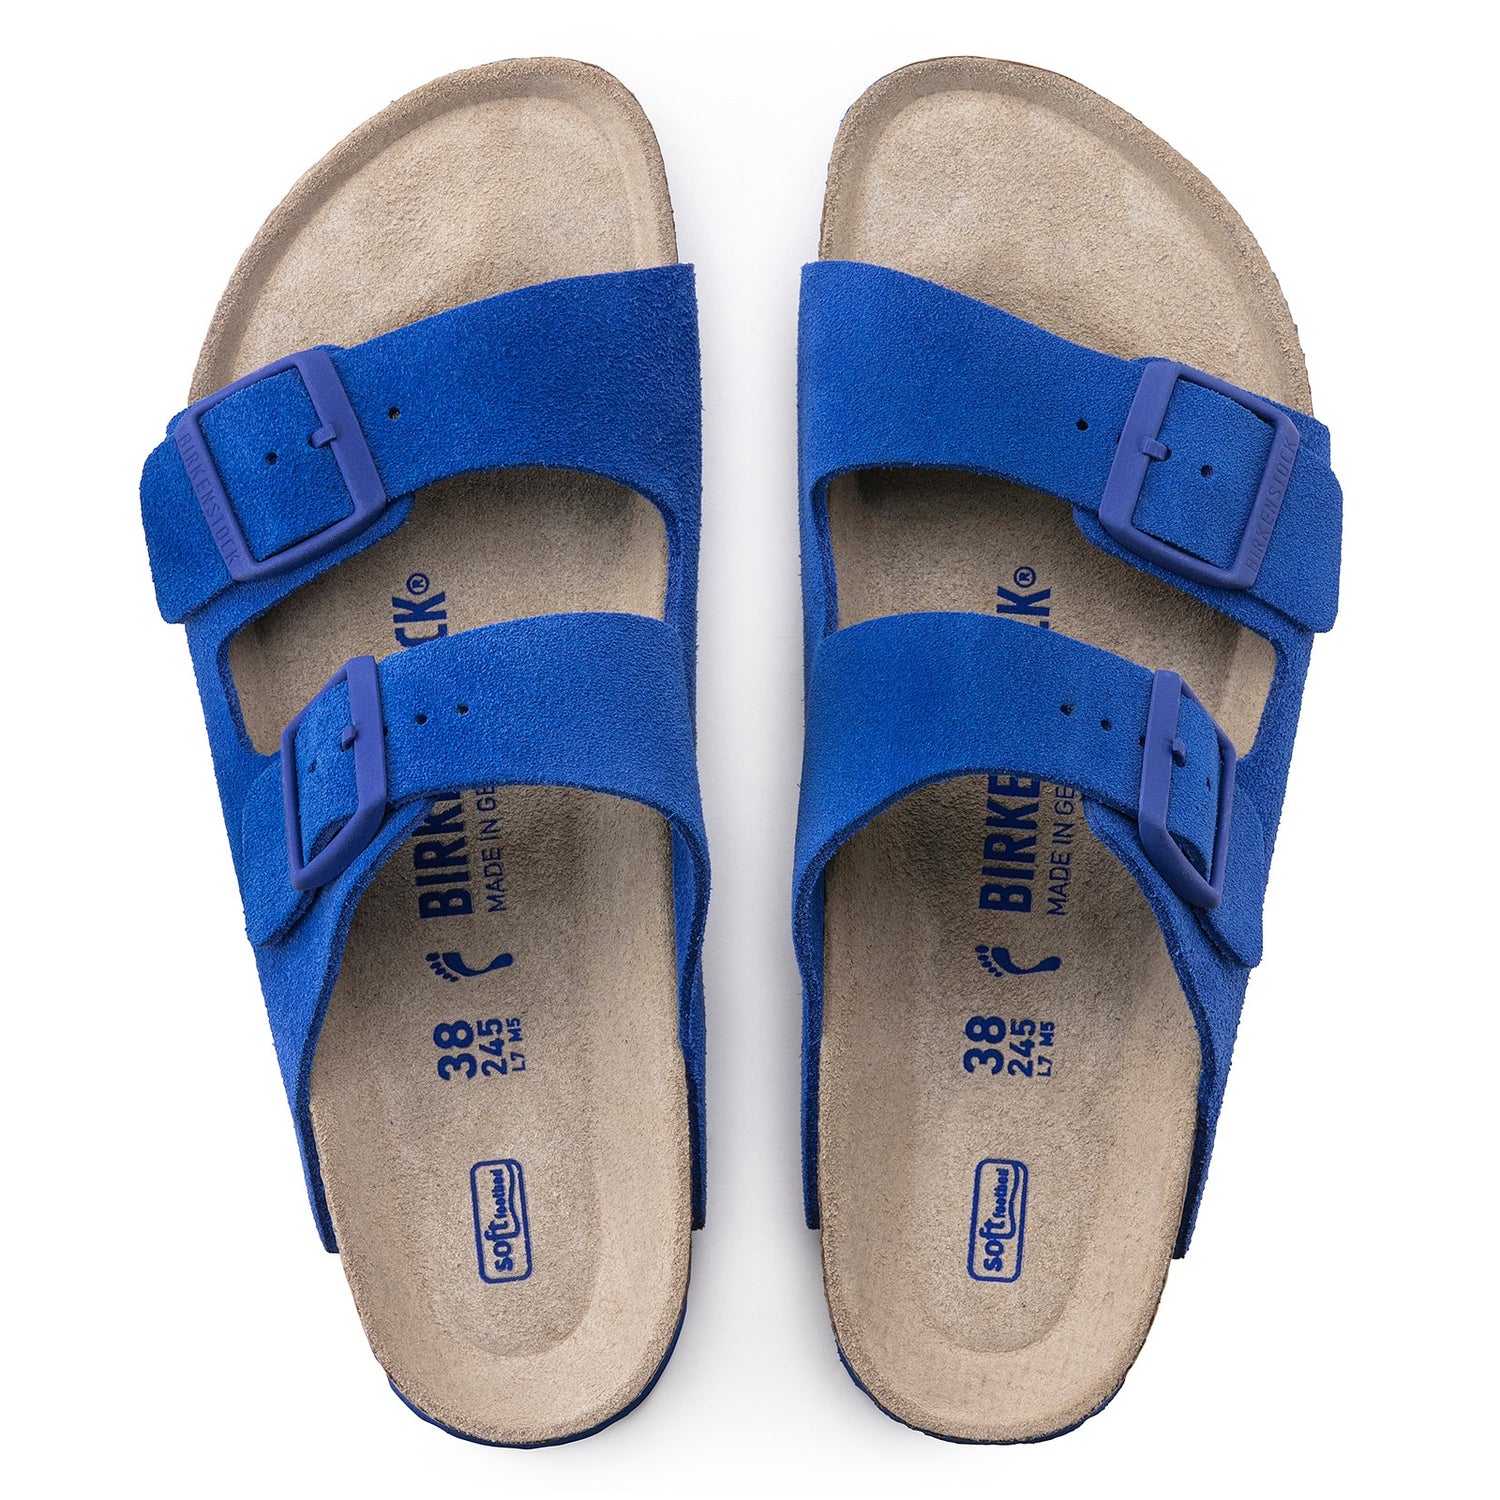 Peltz Shoes  Women's Birkenstock Arizona Soft Footbed Sandal - Narrow Width ULTRA BLUE 1022 298 N